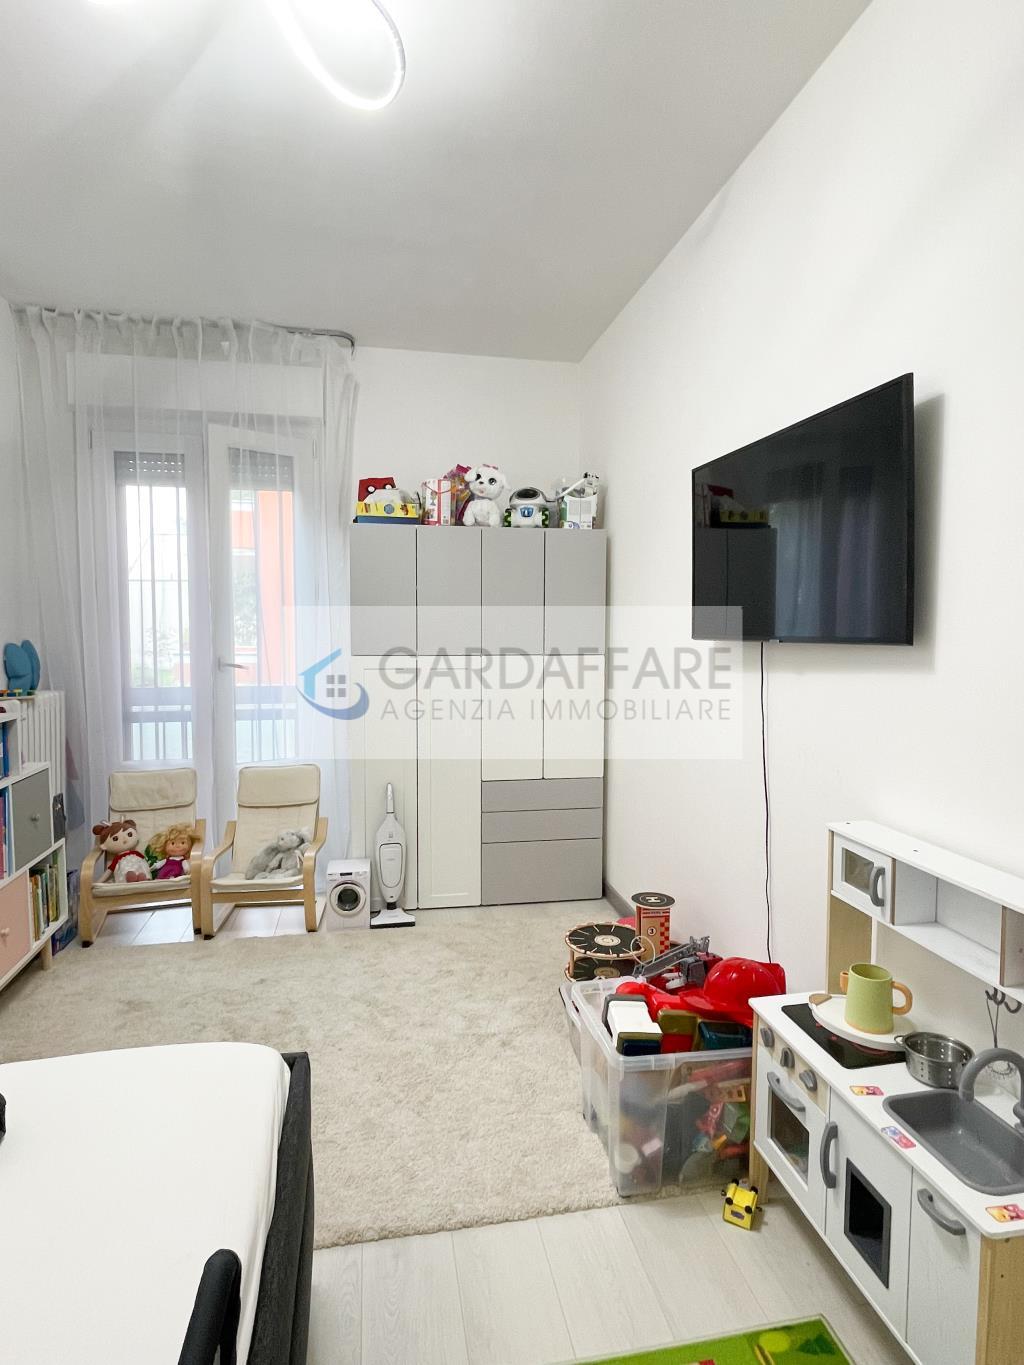 Flat for Buy in Desenzano del Garda - Cod. h15-22-40